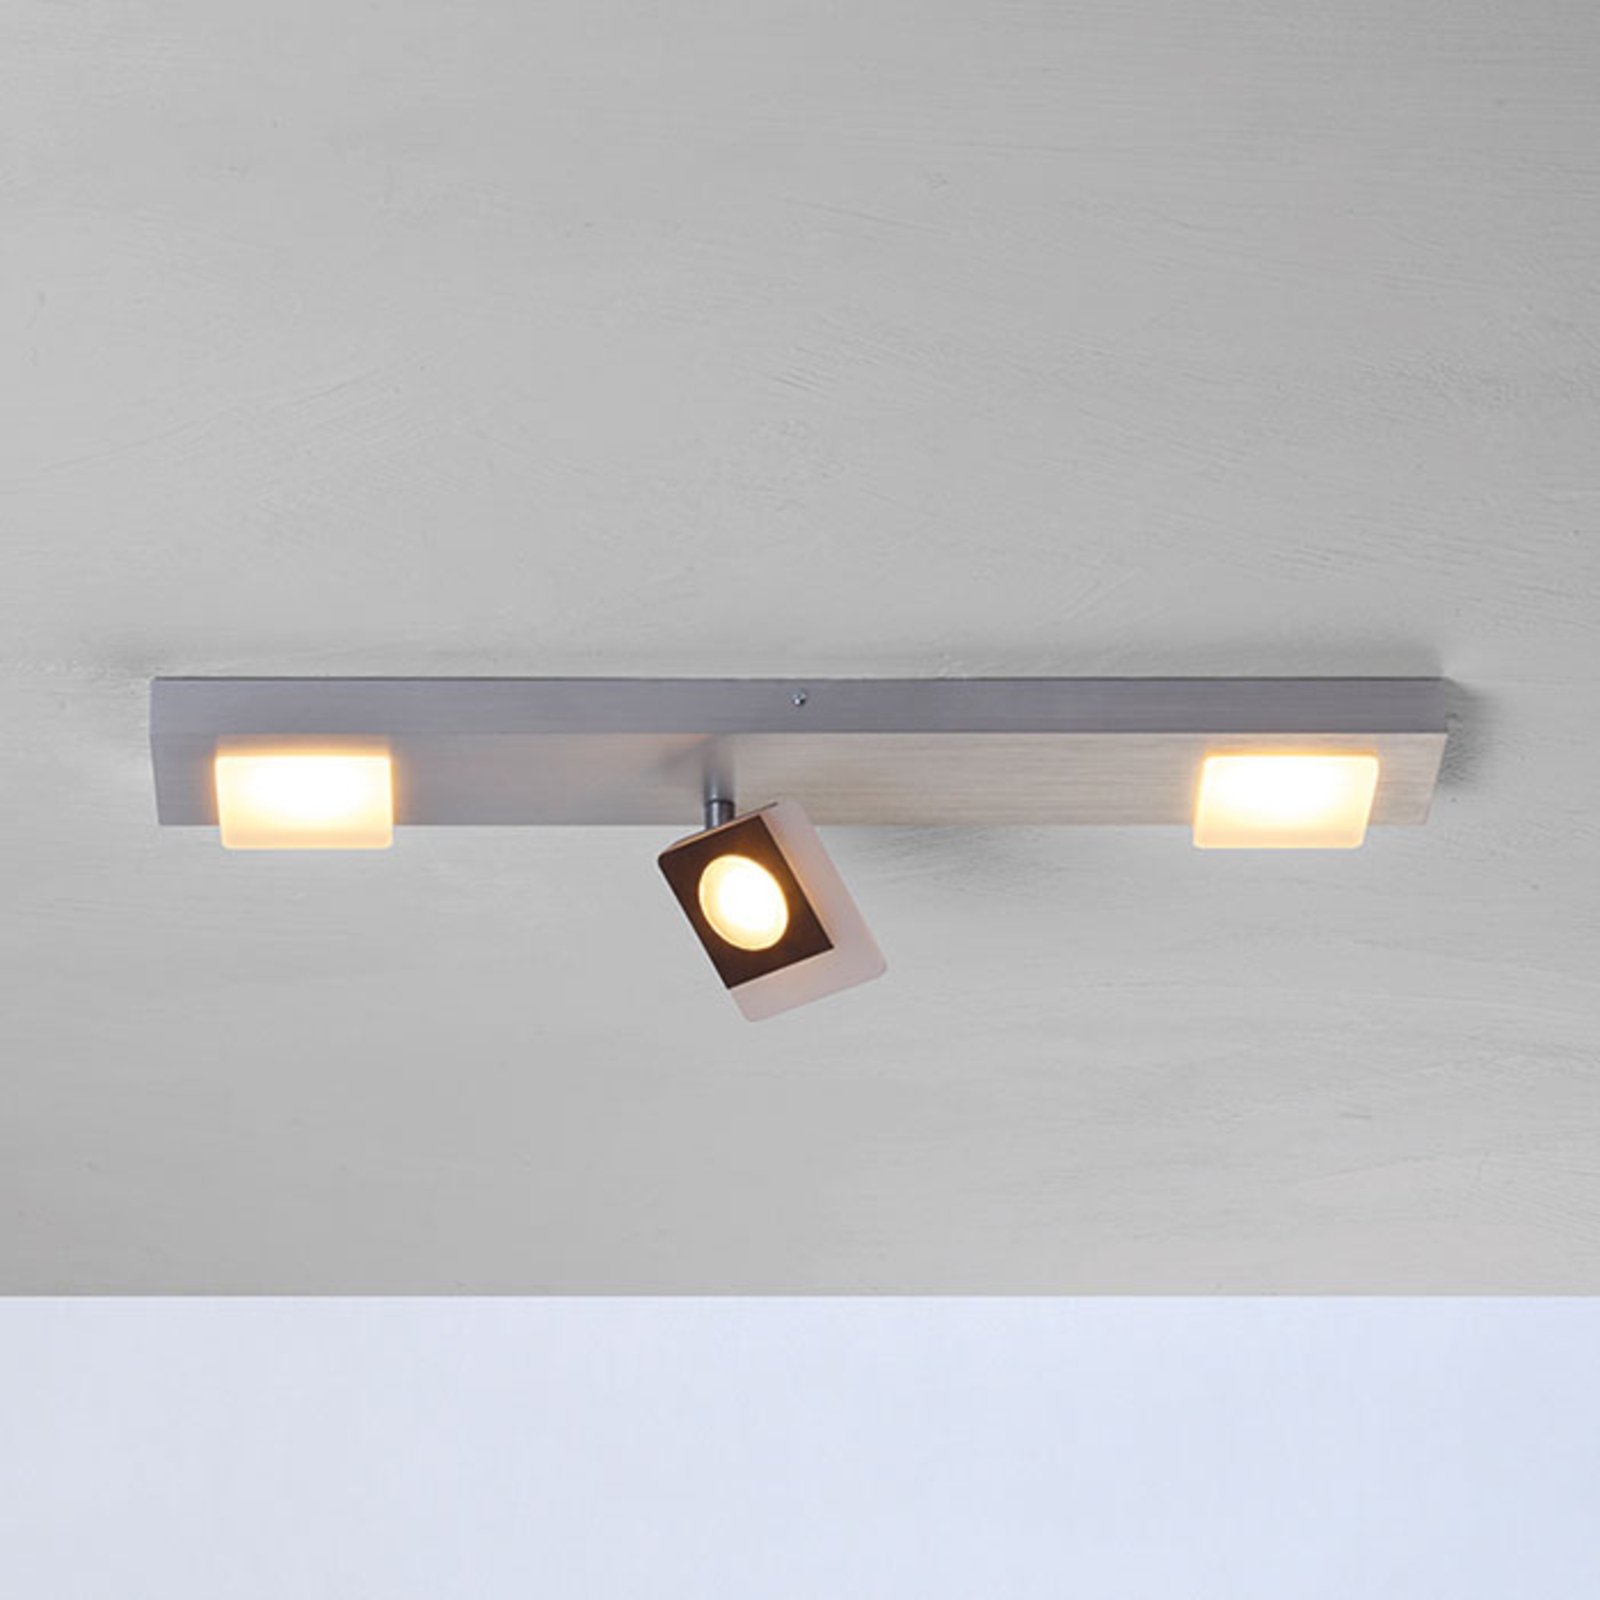 Bopp Session - LED ceiling light, adjustable spot